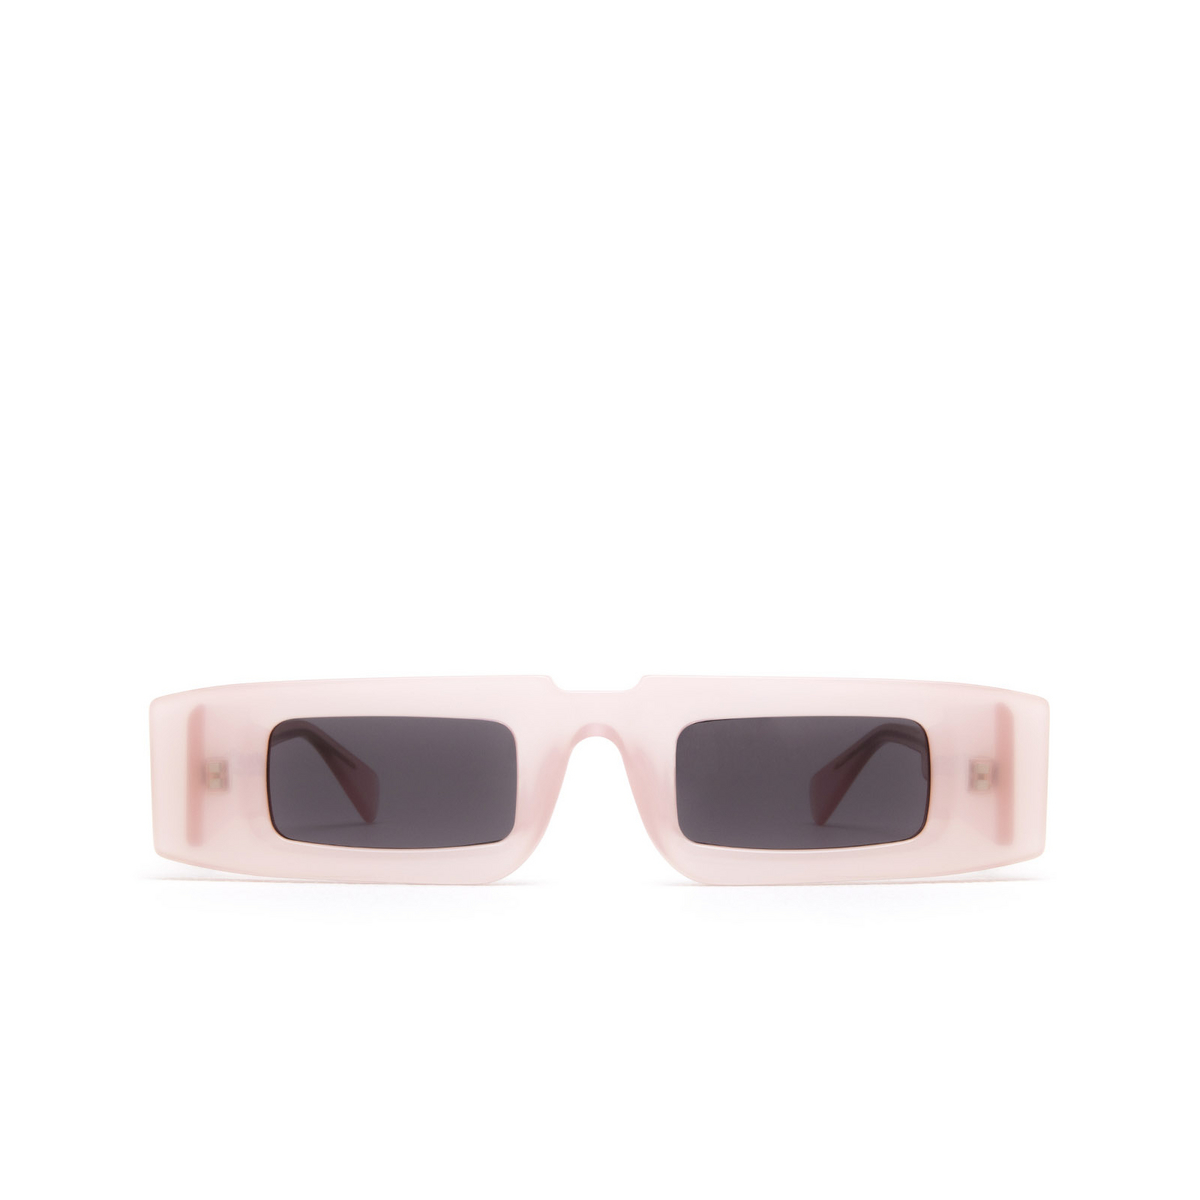 Kuboraum® Rectangle Sunglasses: X5 color Pkl Pink Lemonade - front view